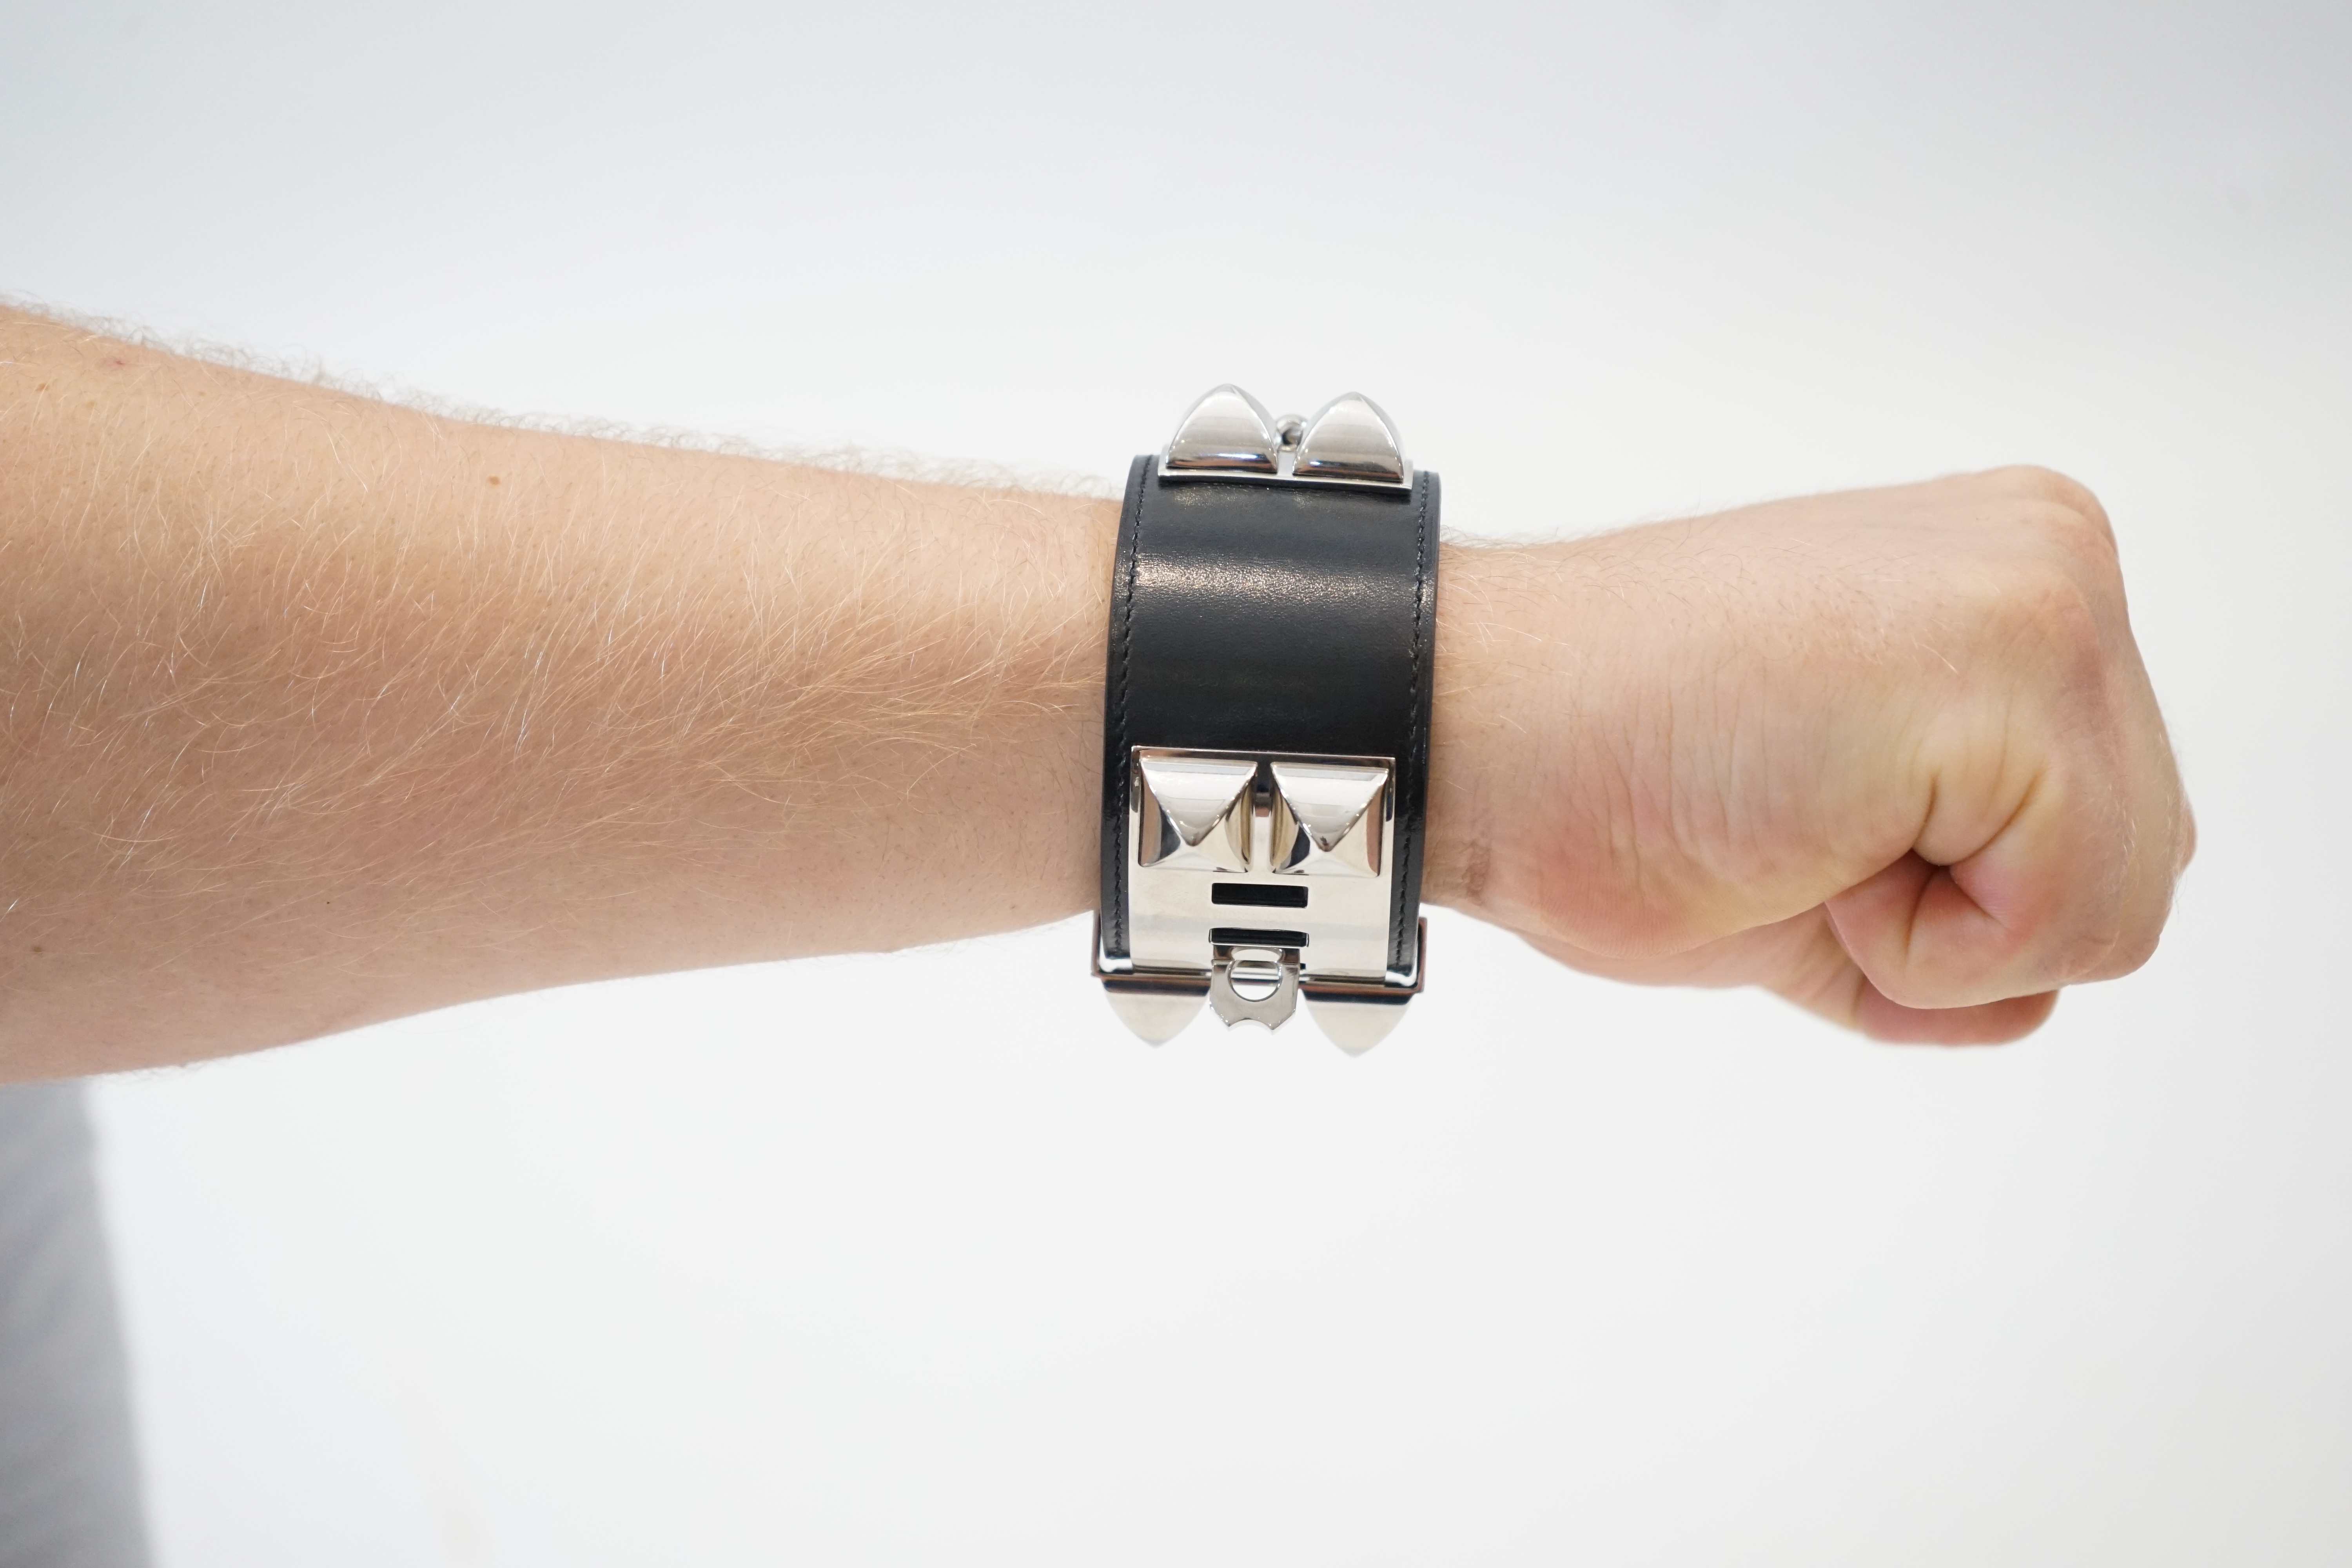 An Hermès Collier De Chien bracelet in black calf leather wrist size approx. 24cm, width: 4cm